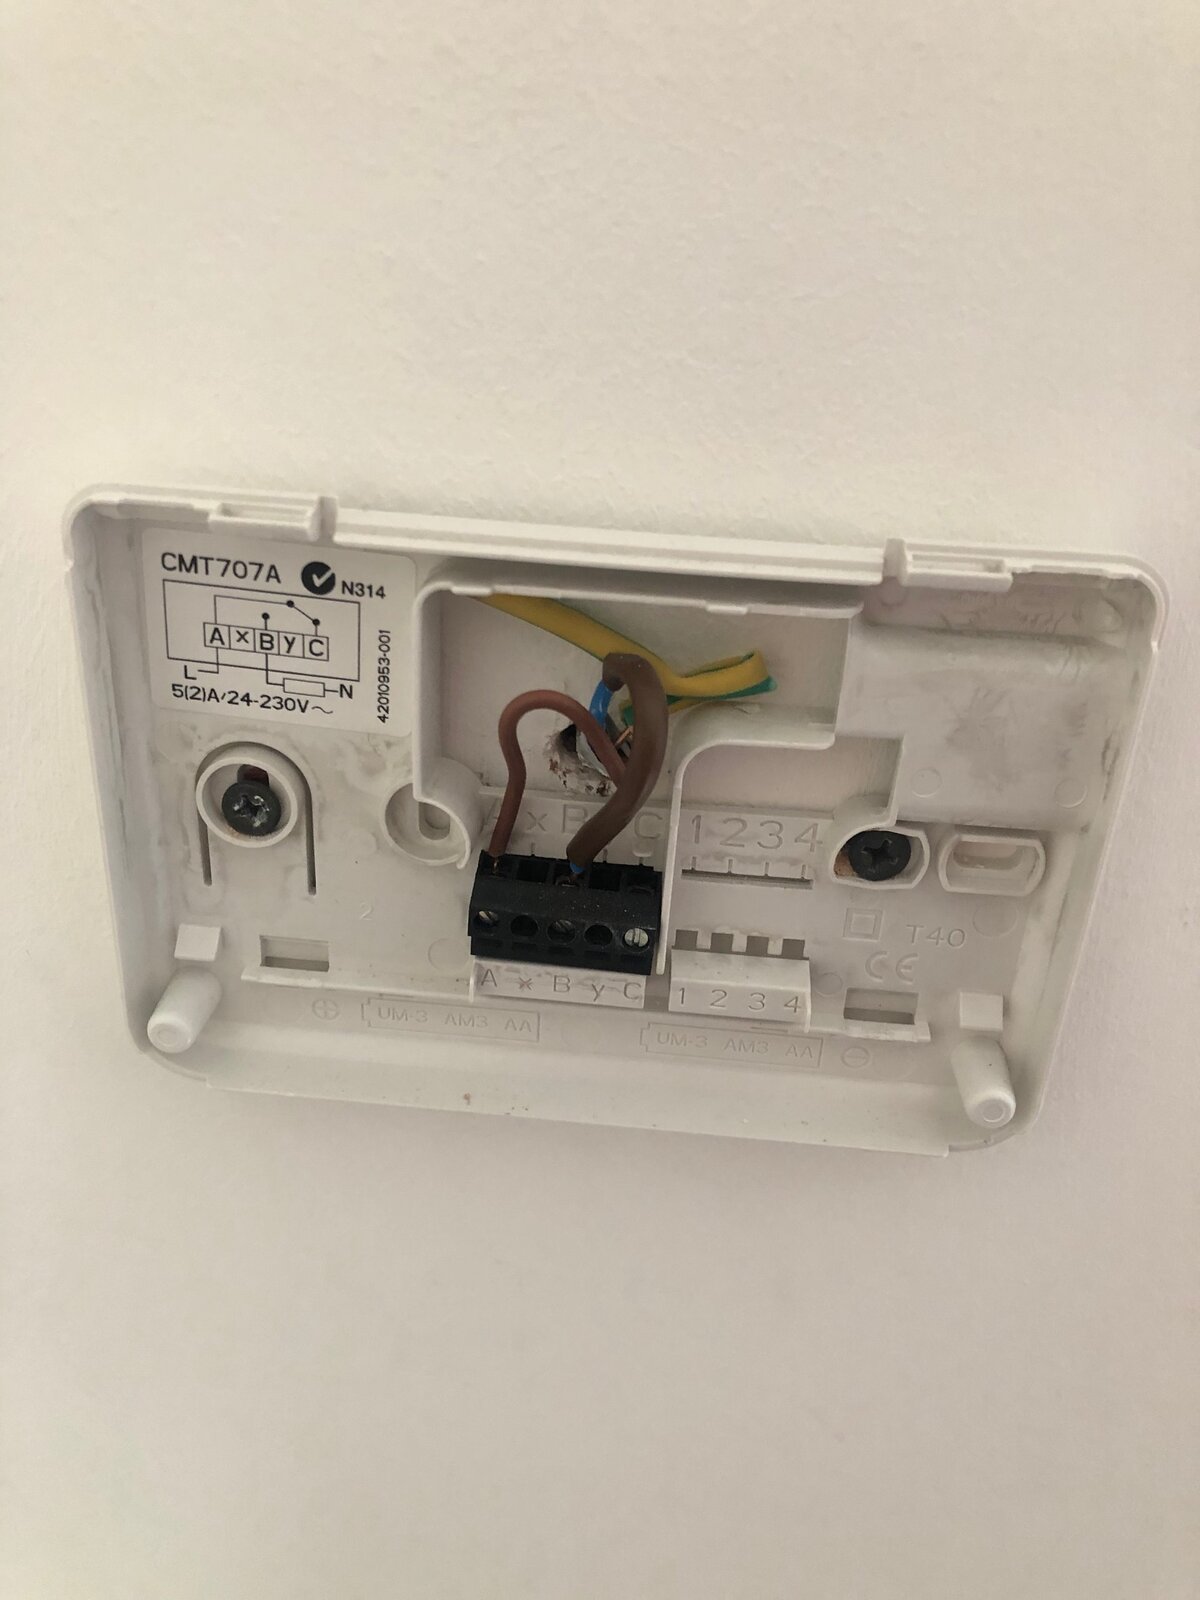 CM707 Thermostat wiring.jpg